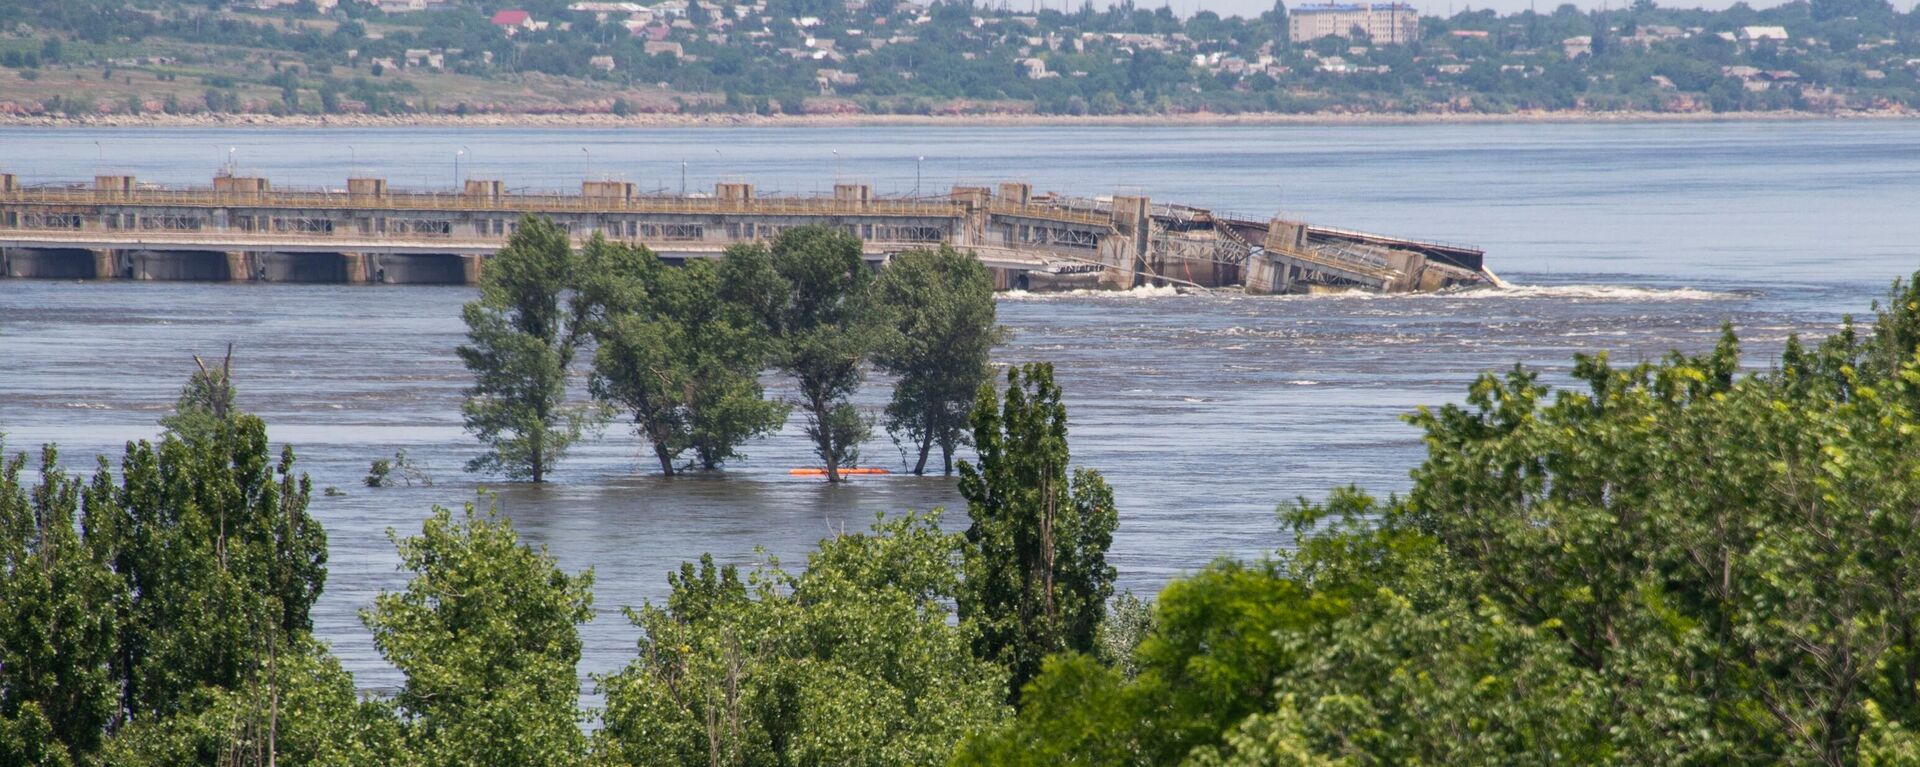 La presa hidroeléctrica de Kajovka, destruida por los ucranianos - Sputnik Mundo, 1920, 10.06.2023